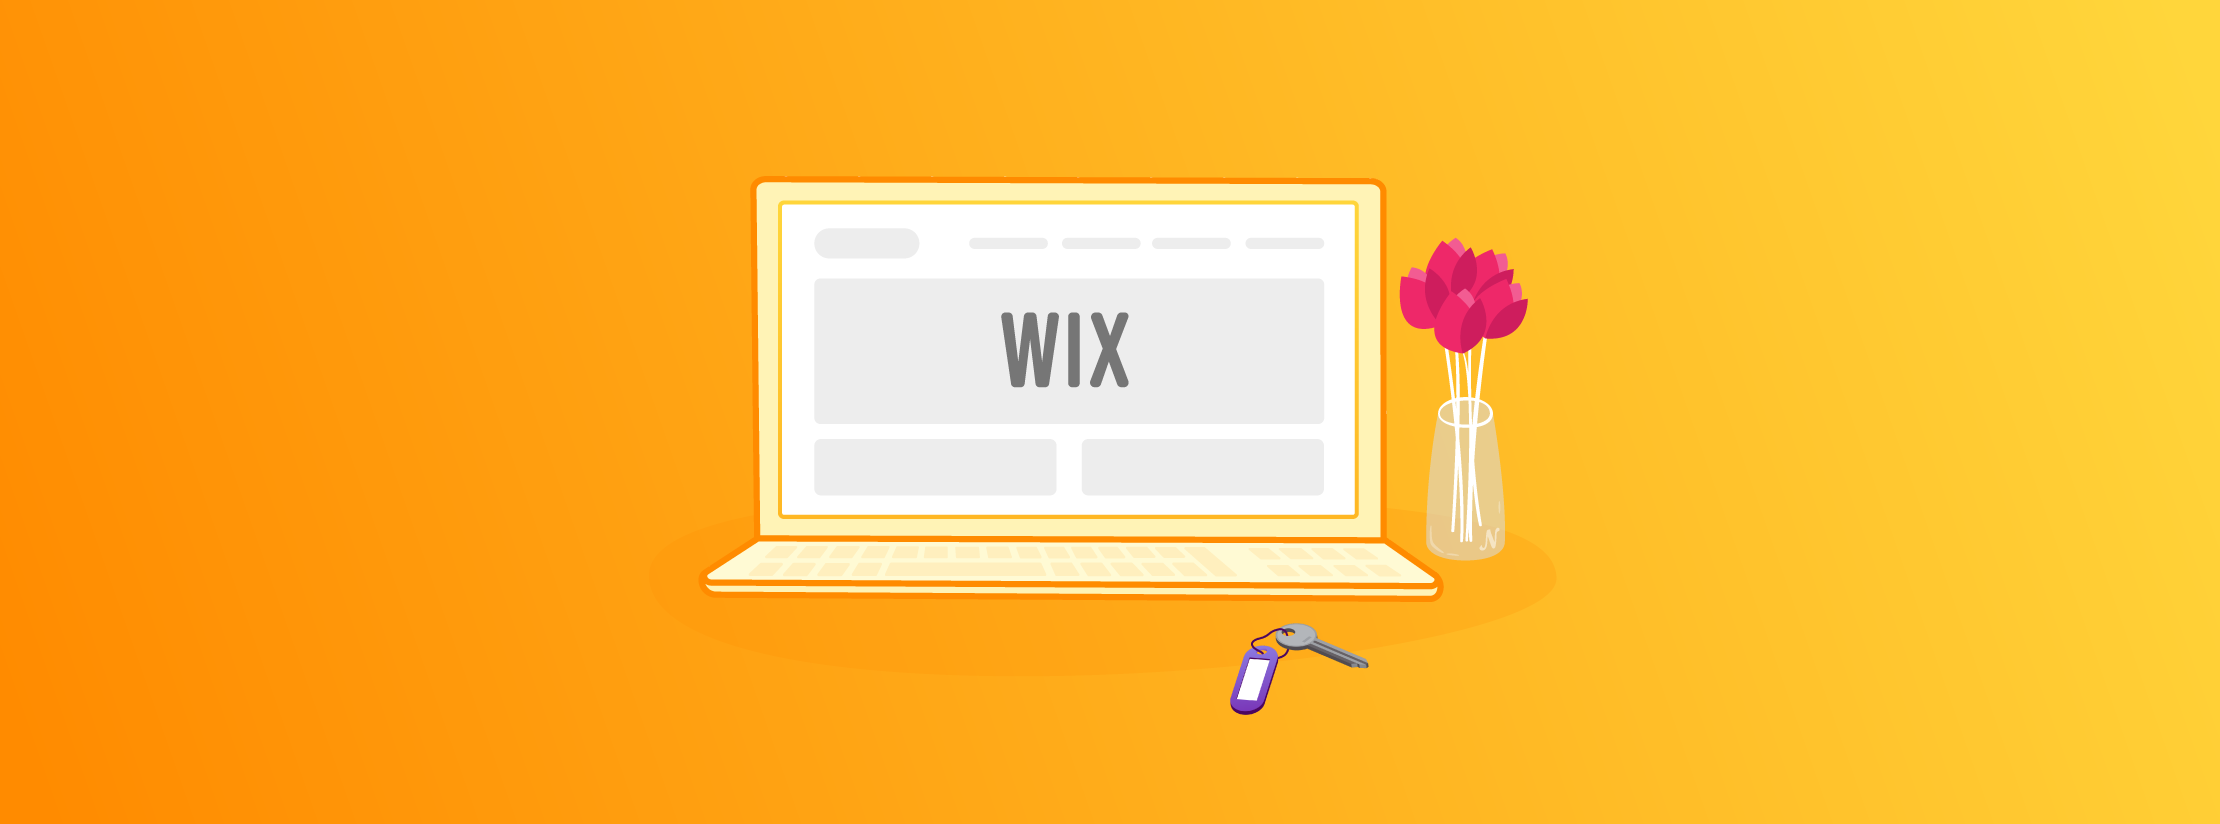 Wix : un bon choix pour créer un site immobilier ?